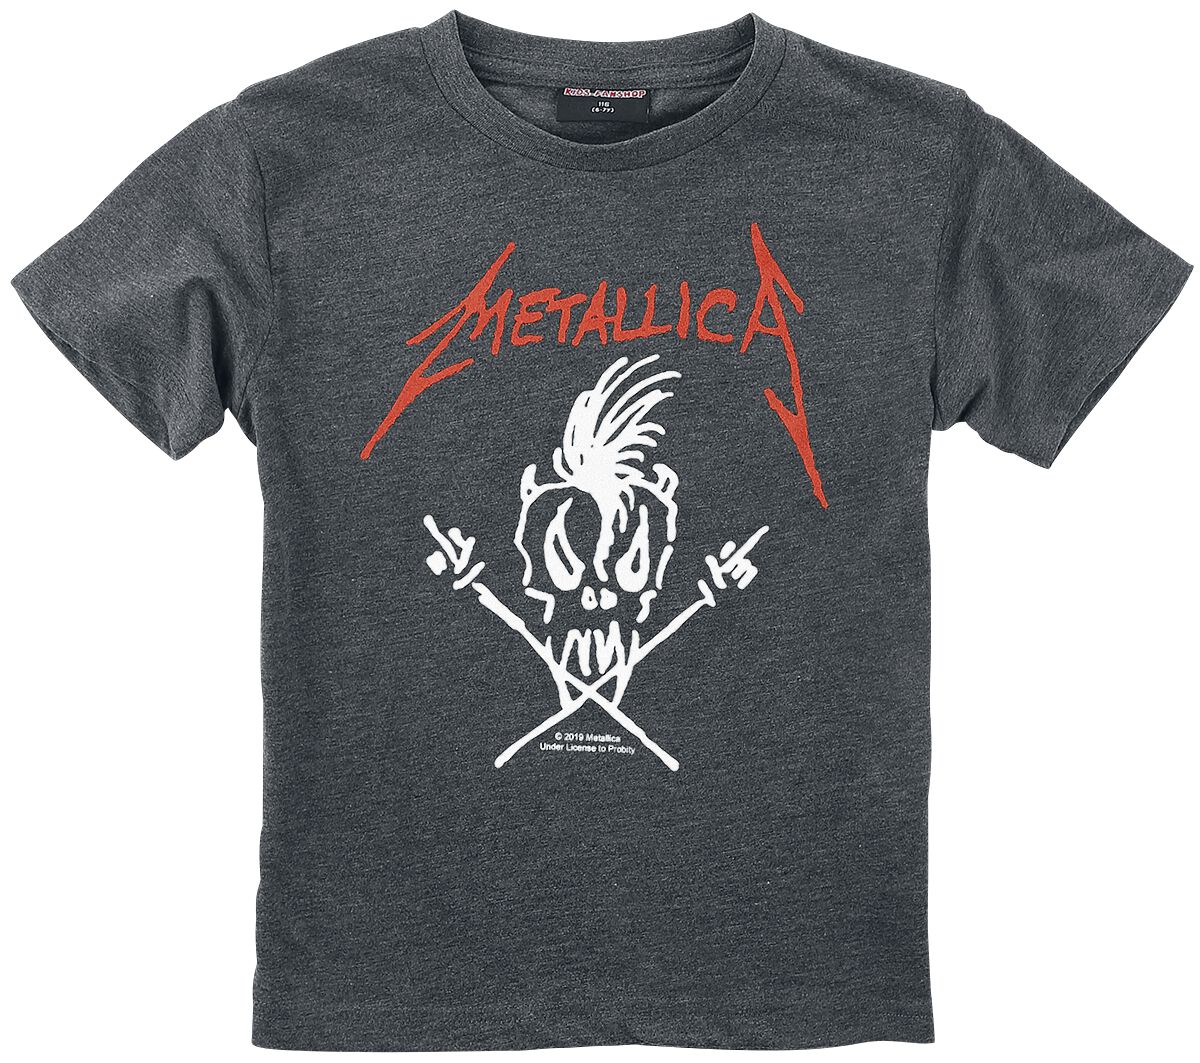 Metallica T-Shirt - Metal-Kids - Scary Guy - 92 bis 164 - für Mädchen & Jungen - Größe 164 - anthrazit meliert  - Lizenziertes Merchandise!